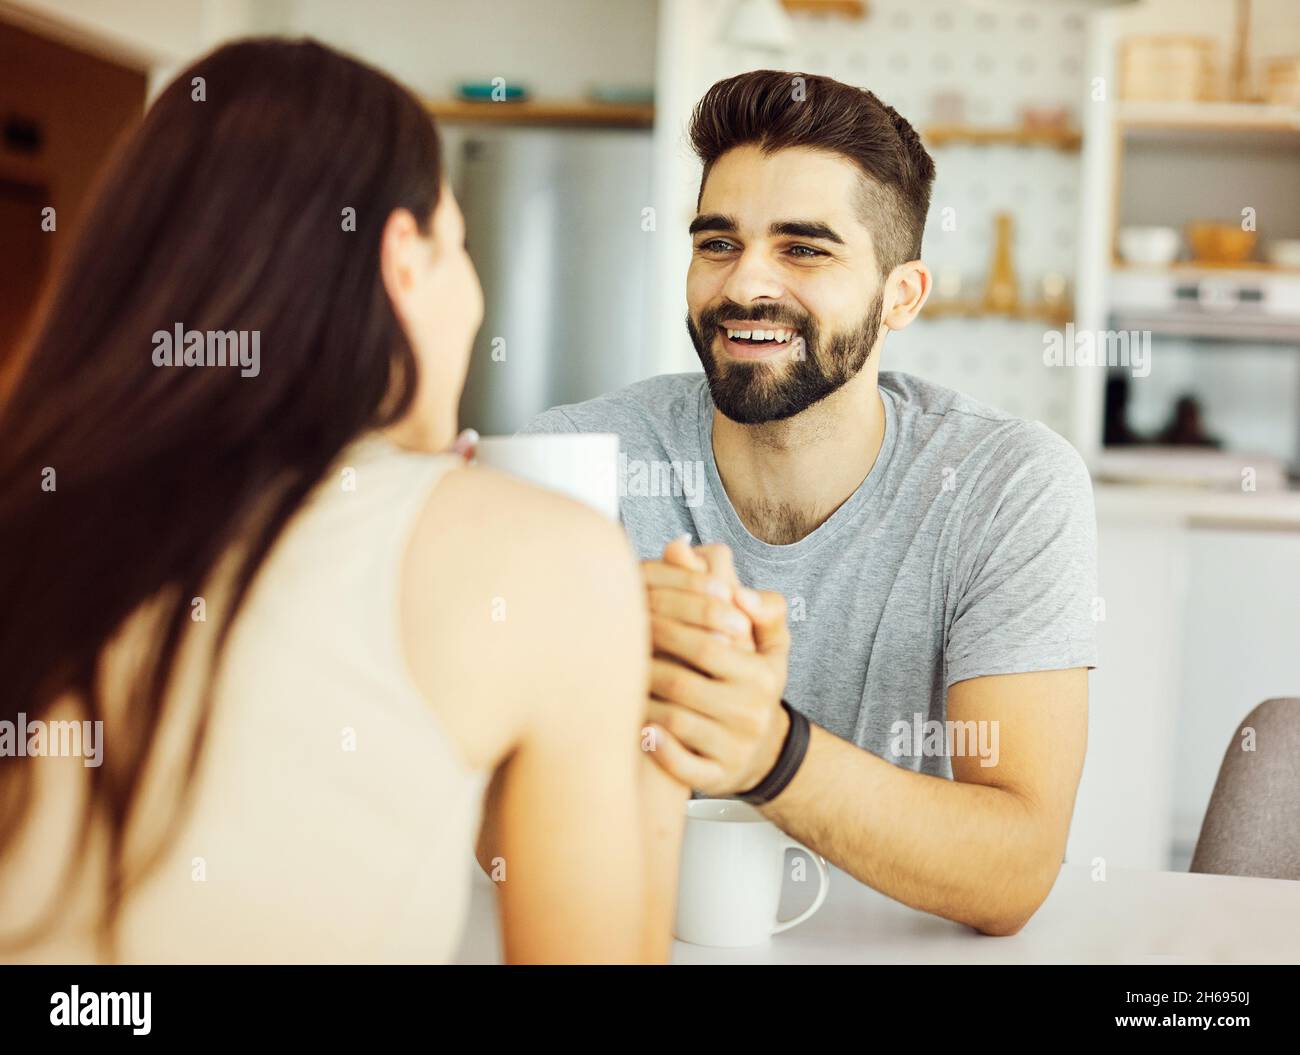 Frau Mann Paar reden Liebe junge Mädchen Lifestyle Freund zusammen lächelnd glücklich Freundin Romantik Café Stockfoto